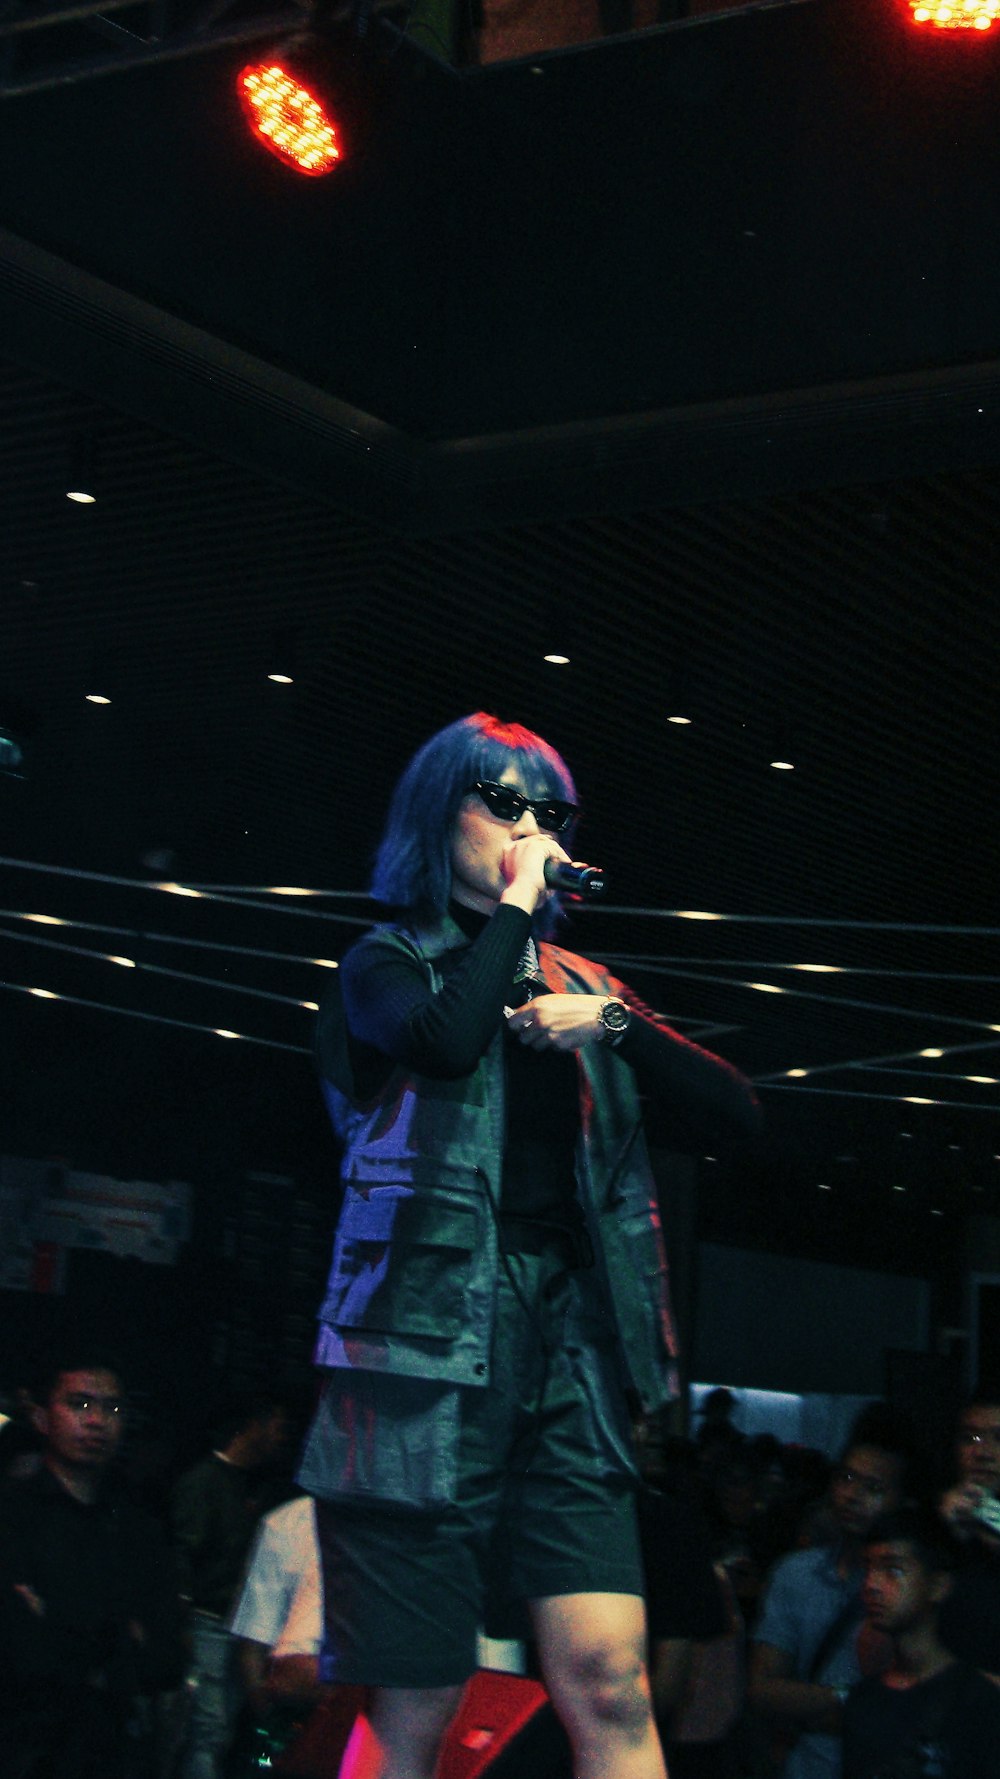 woman in black jacket sings on stage